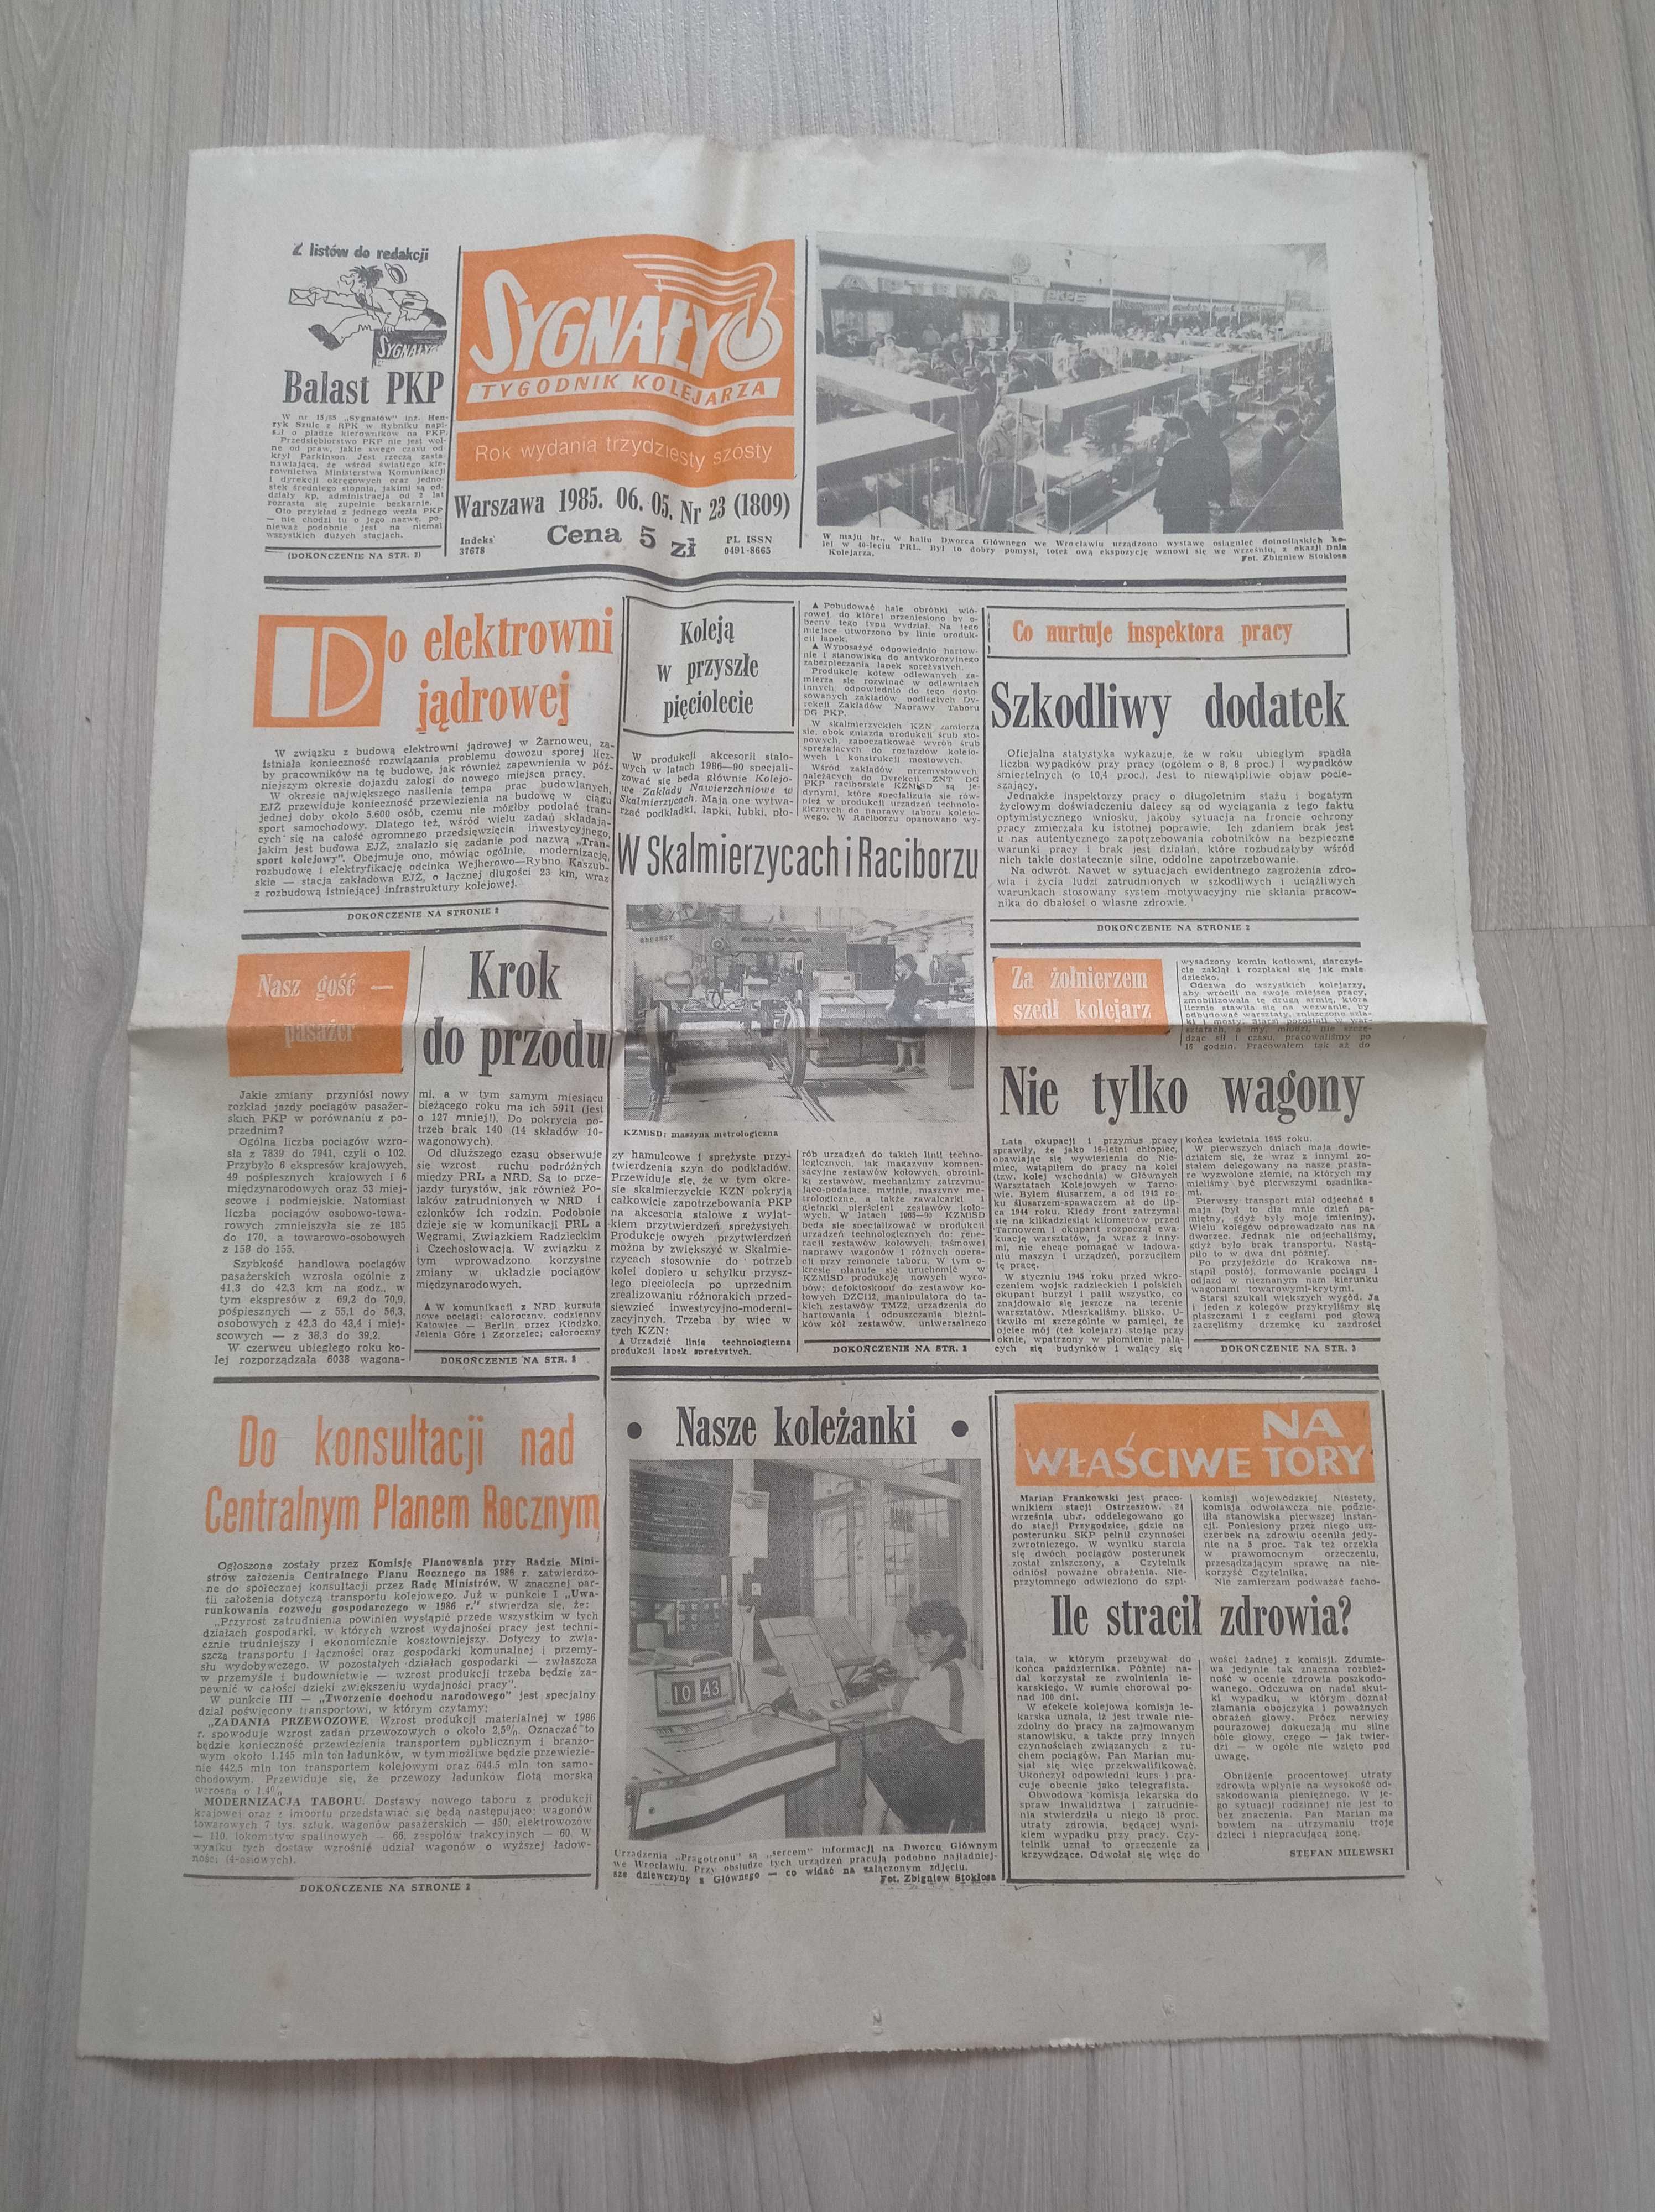 Sygnały tygodnik kolejarza nr 23/1985, 05.06.1985